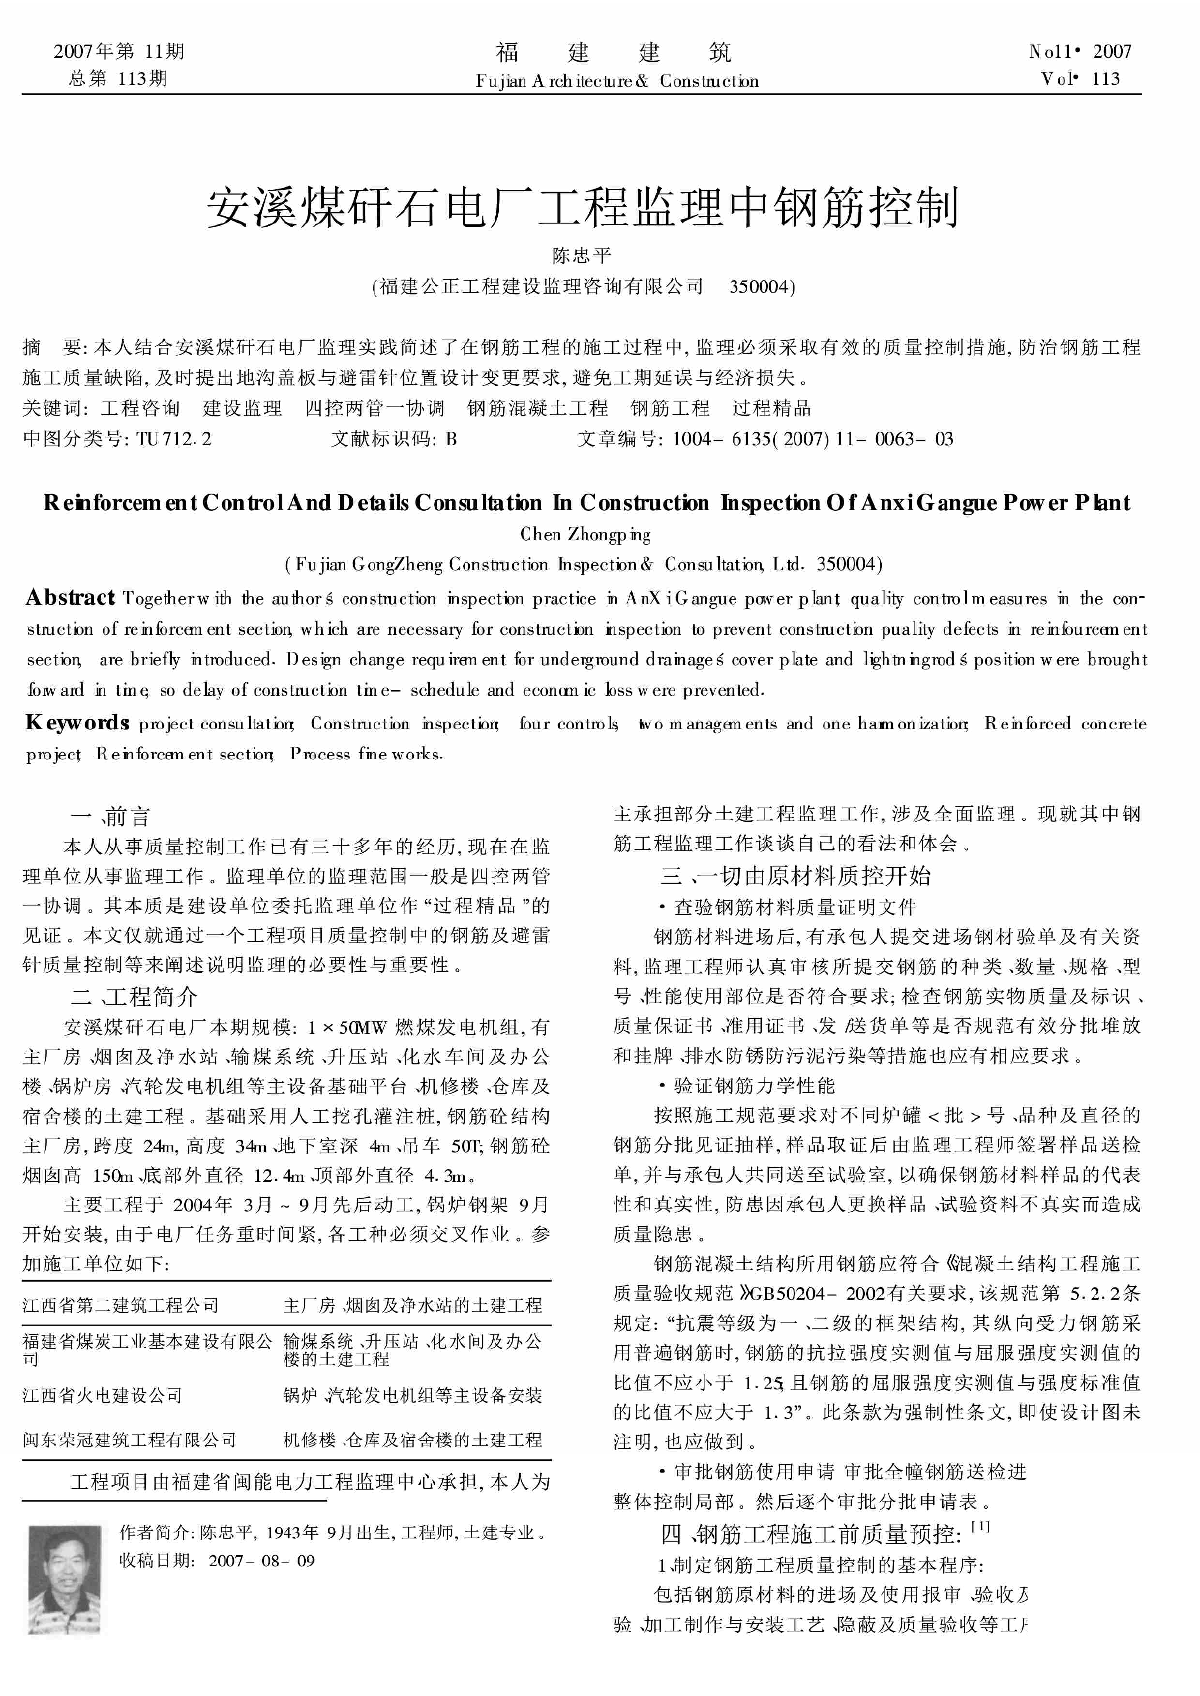 安溪煤矸石电厂工程监理中钢筋控制_陈忠平.pdf-图一